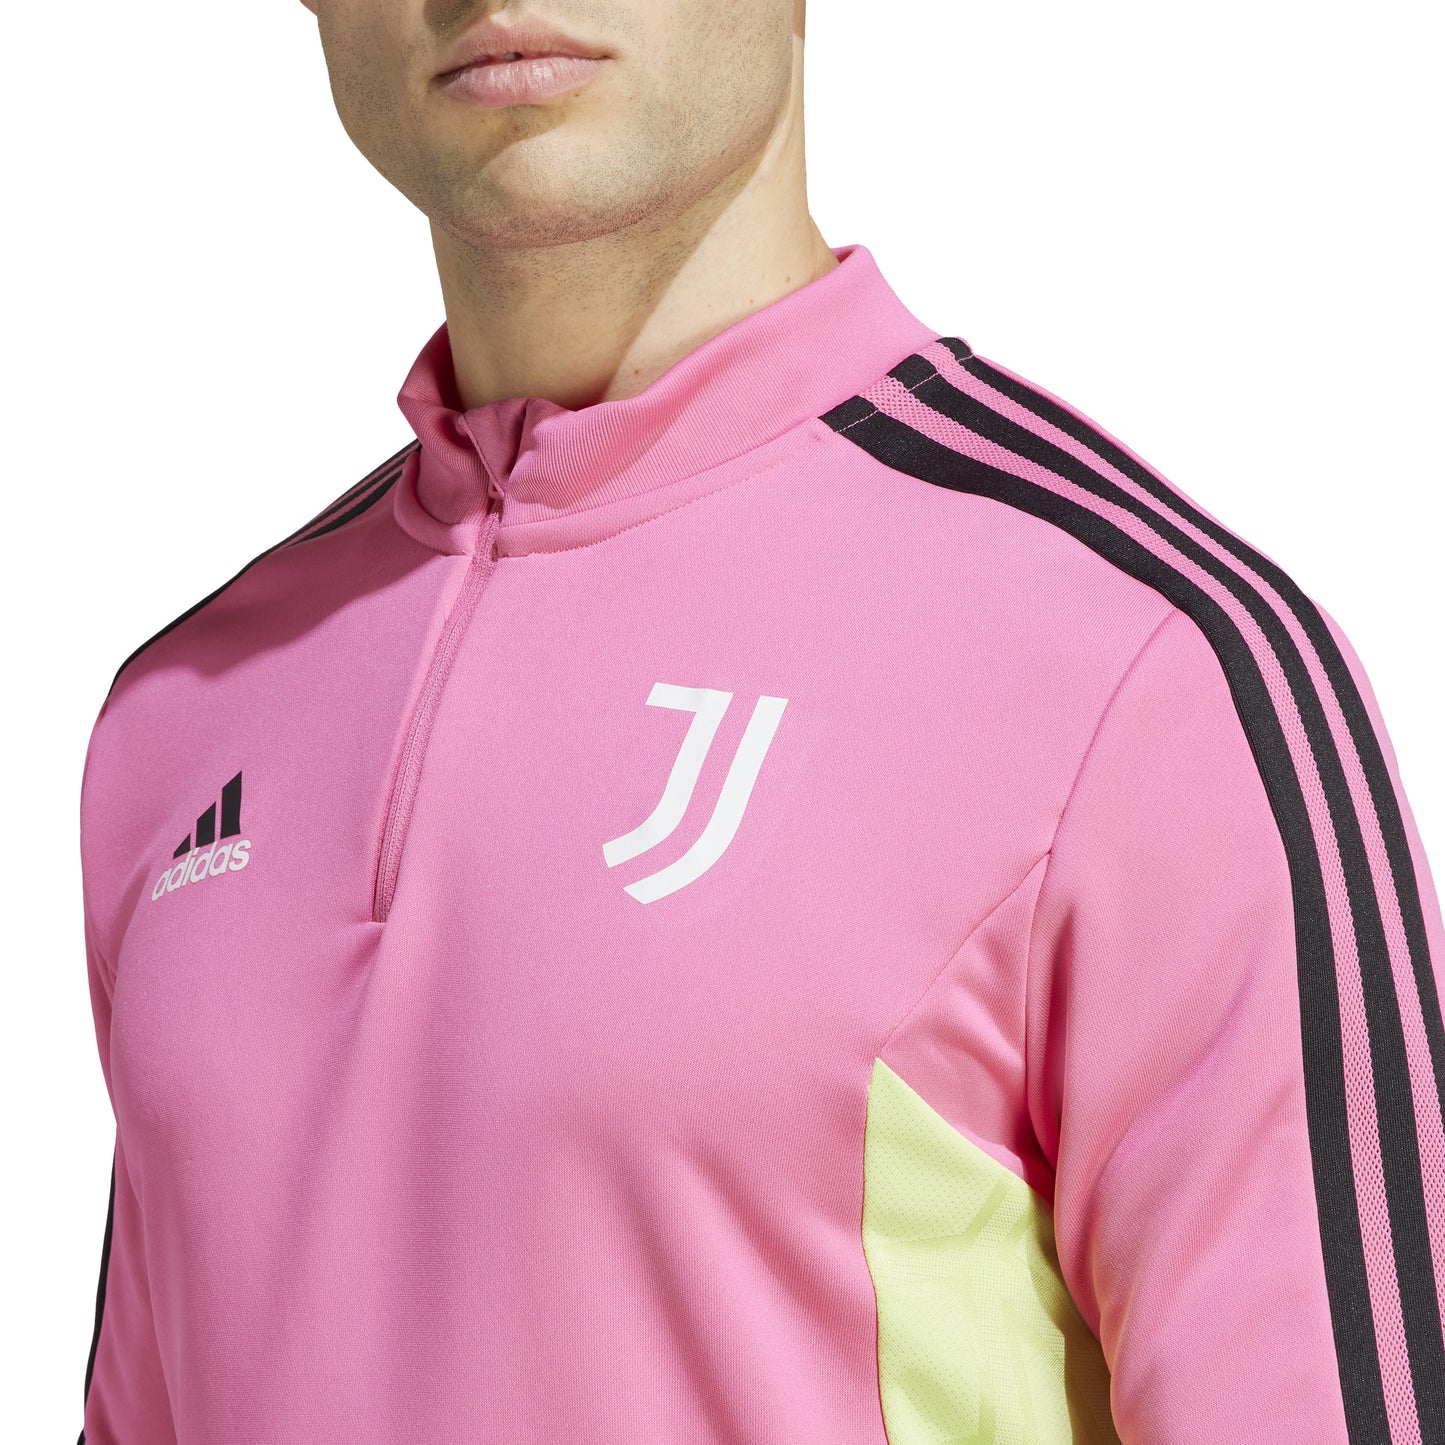 Adidas Juventus Training Top